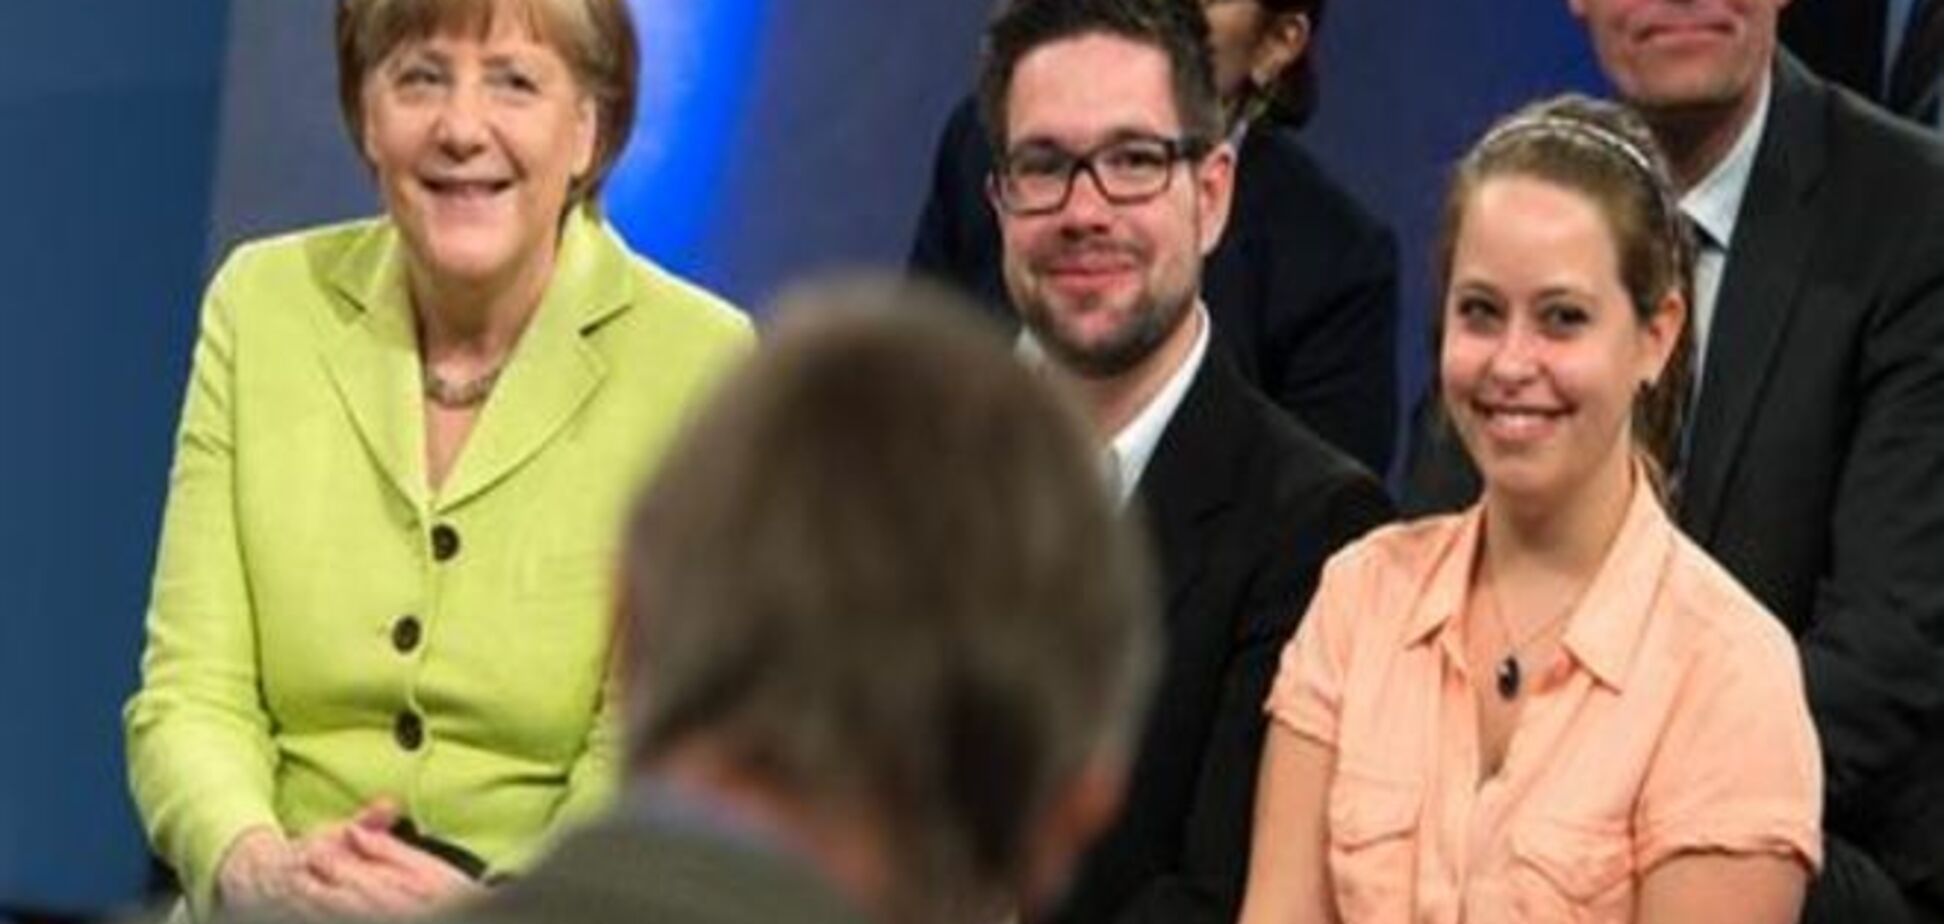 Канцлер Меркель поговорила с народом